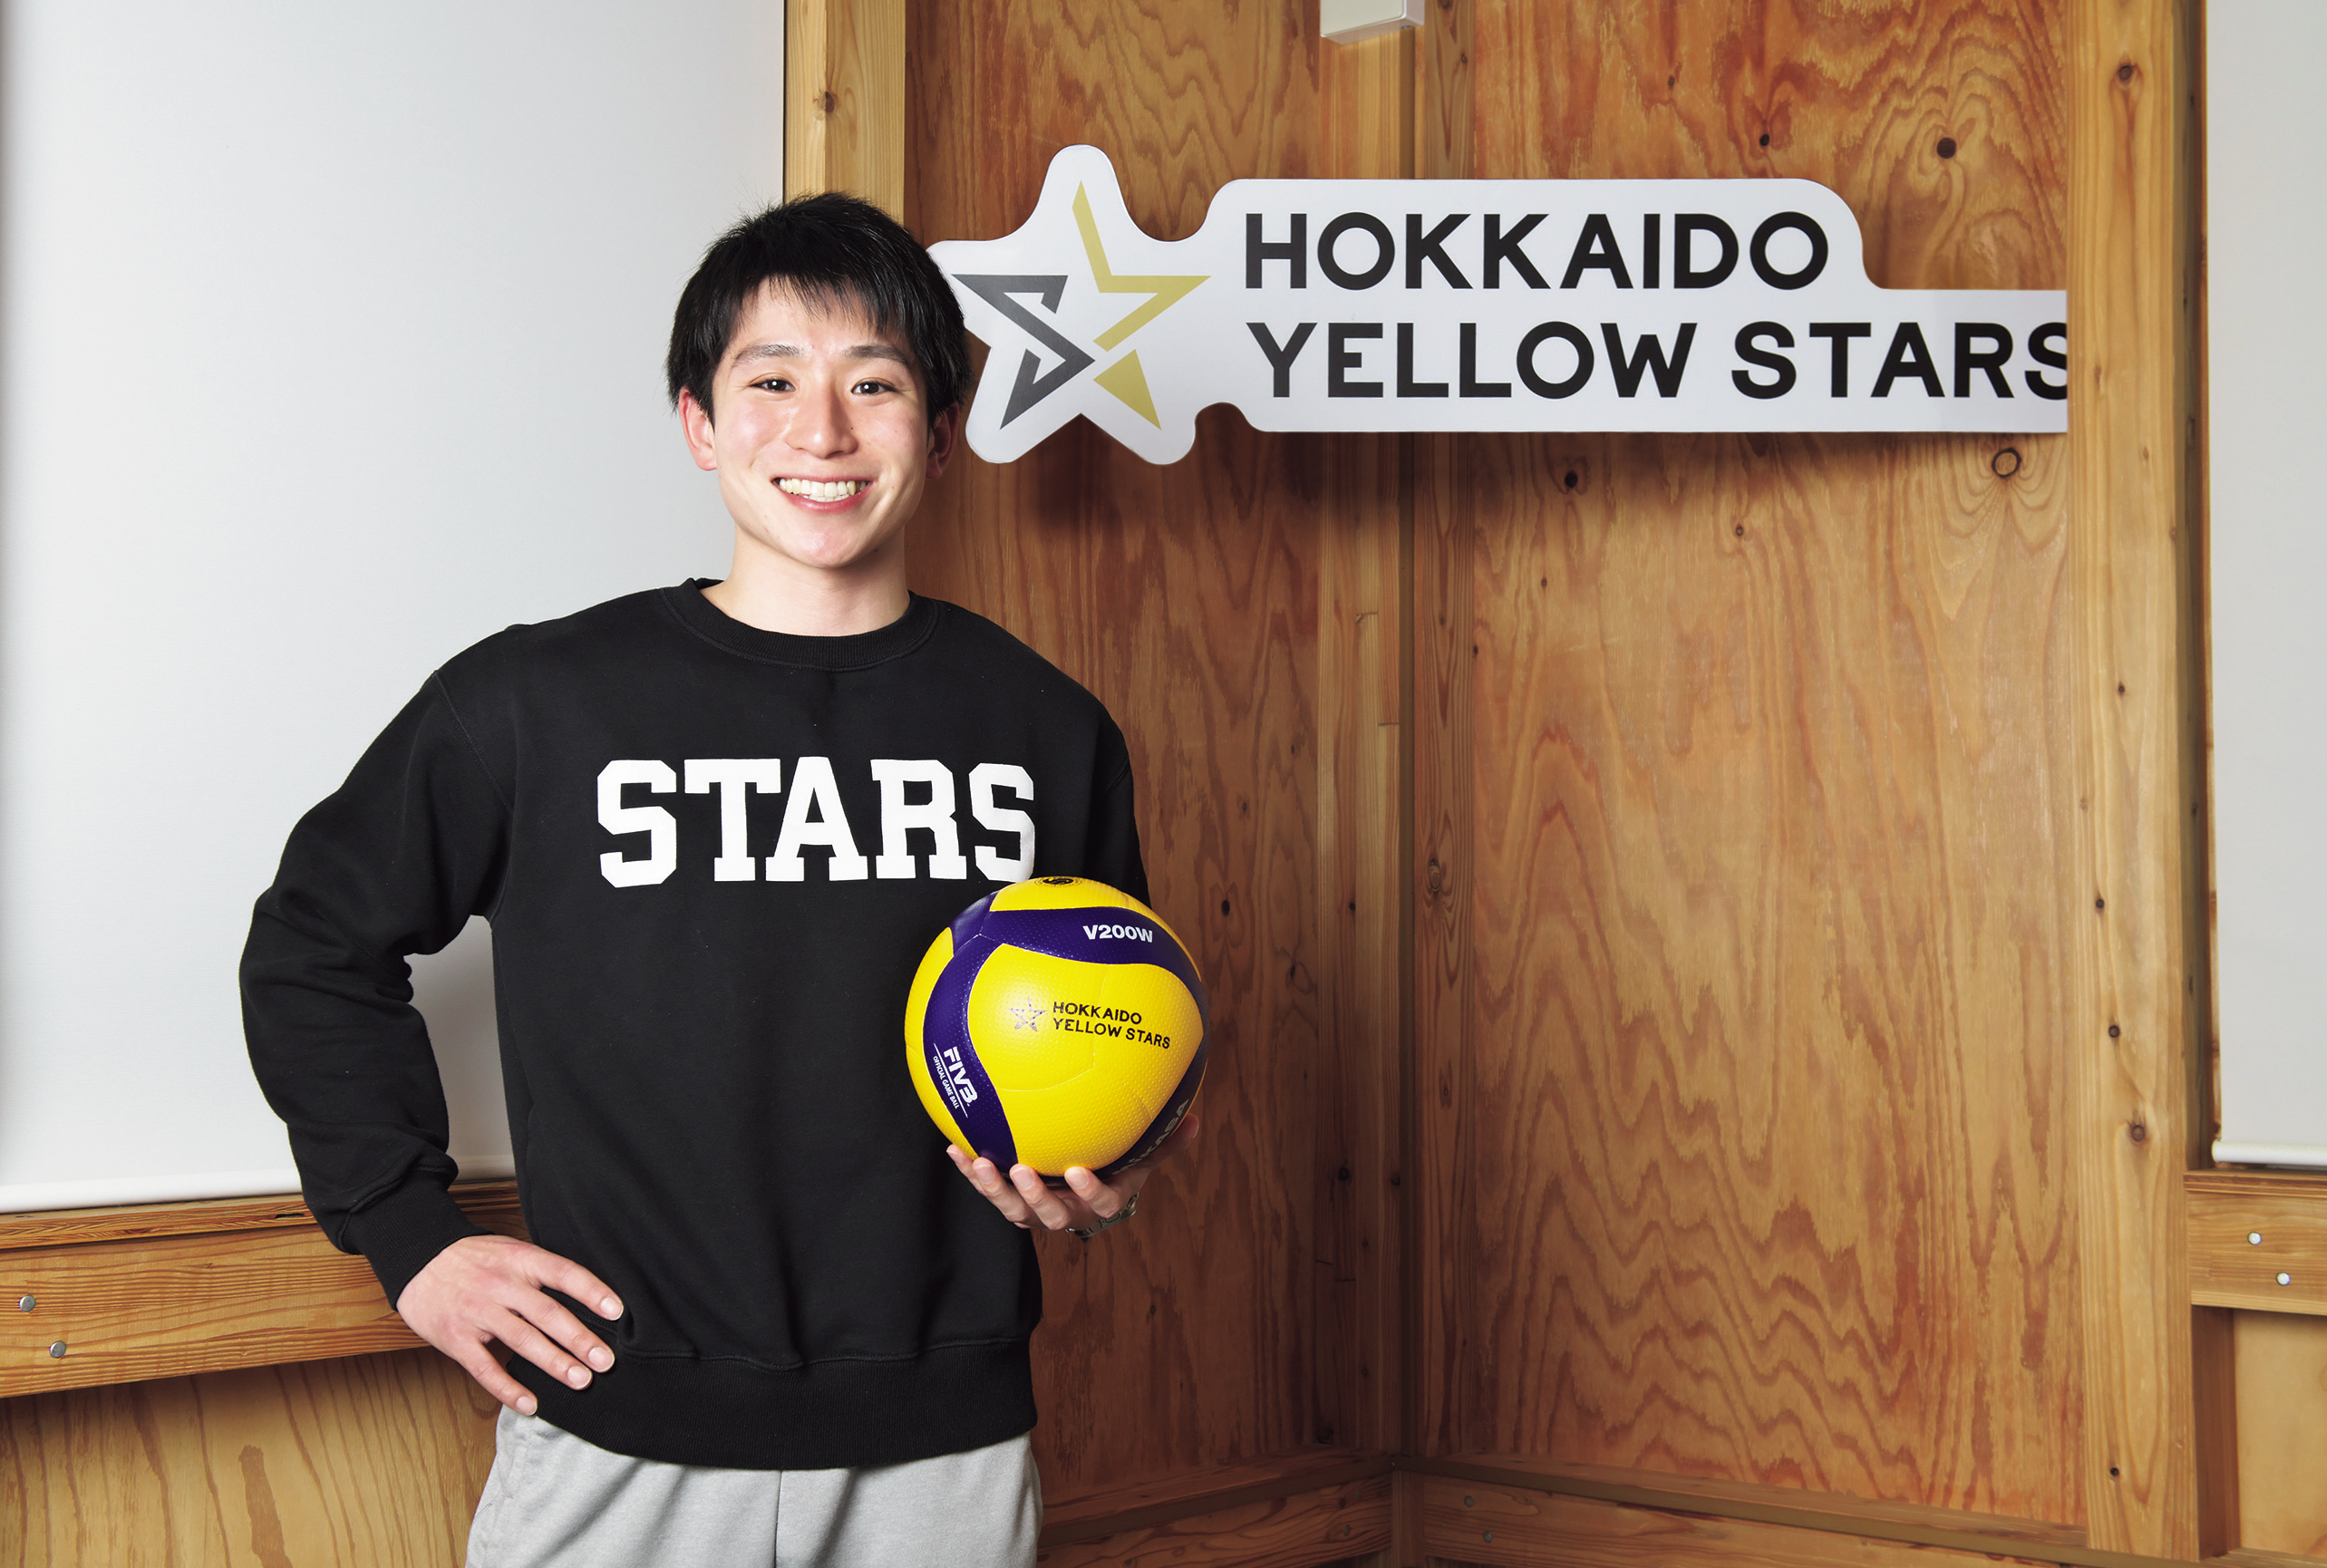 【第15回】北海道イエロースターズの山田滉太選手にお話を伺いました。 